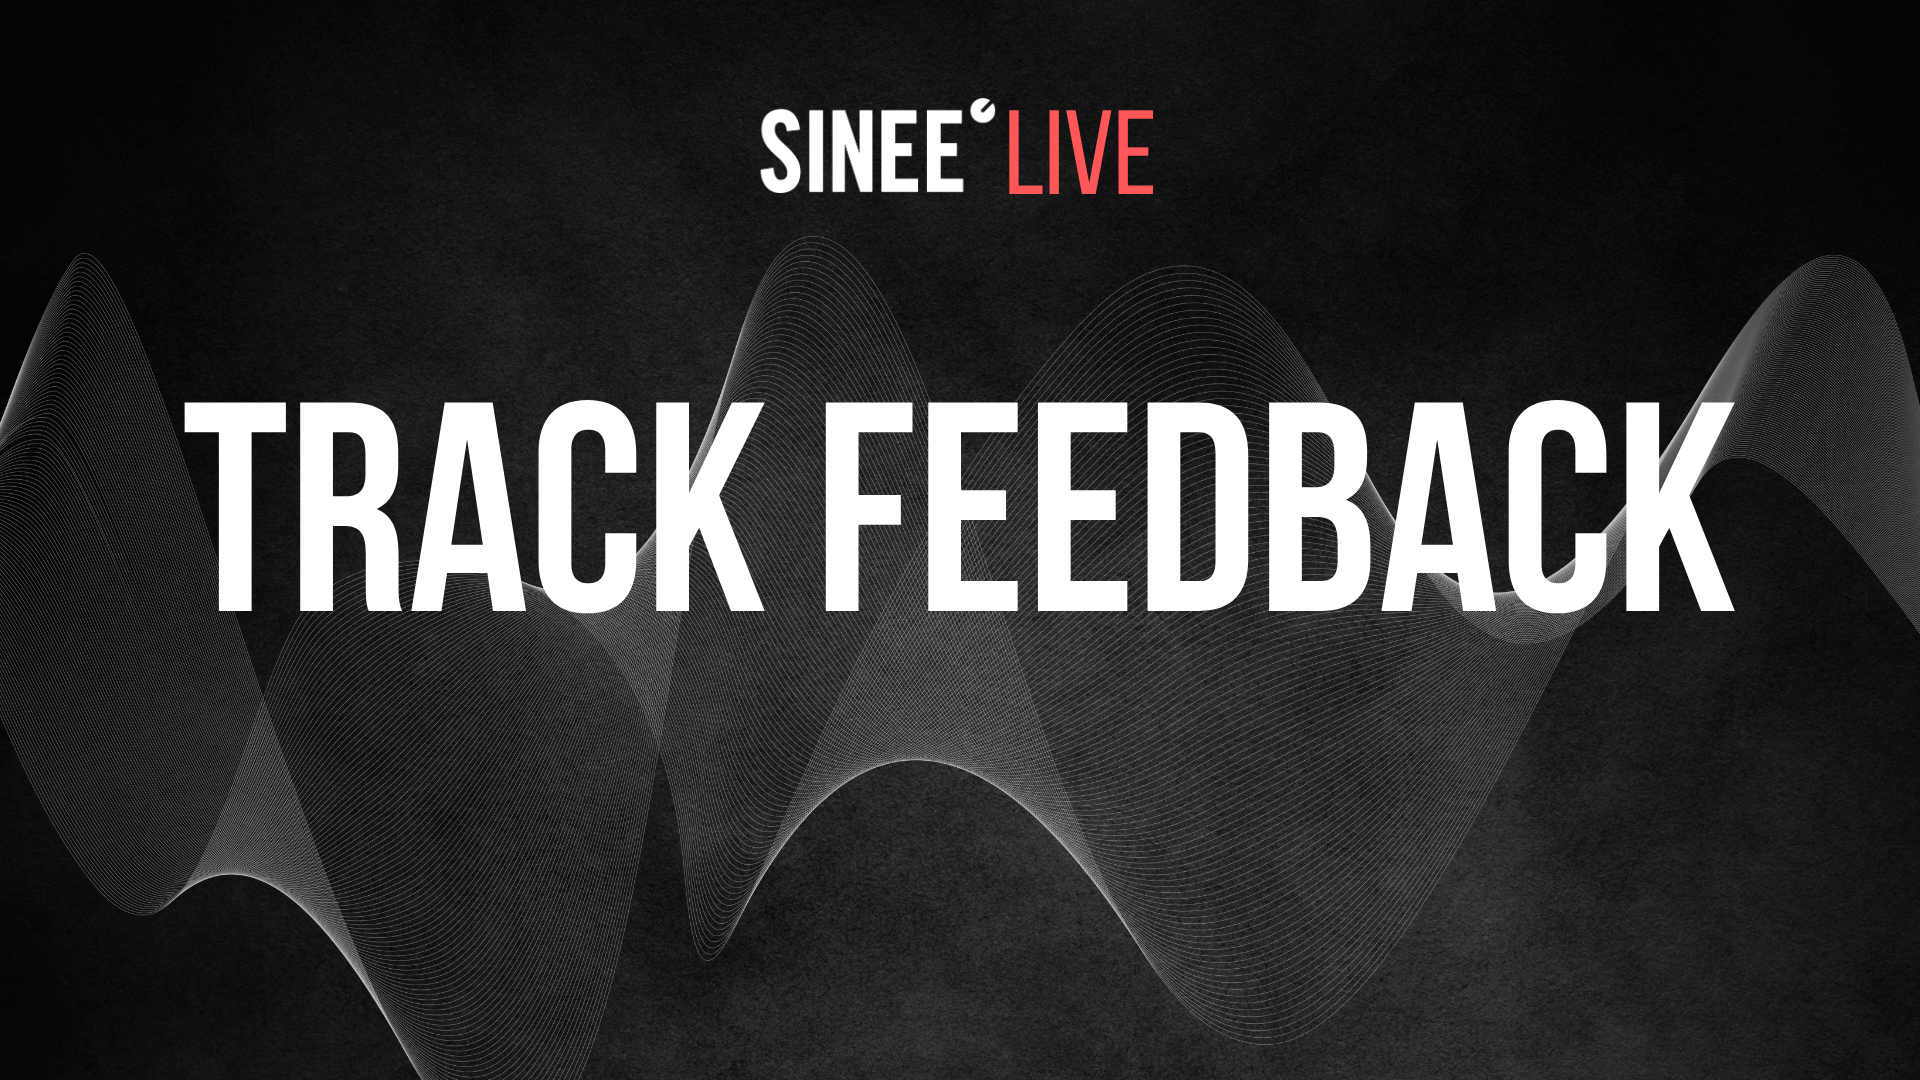 Trackfeedback Live: Jeden Dienstag ab 18 Uhr! Diese Woche mit Fafi & Thorge